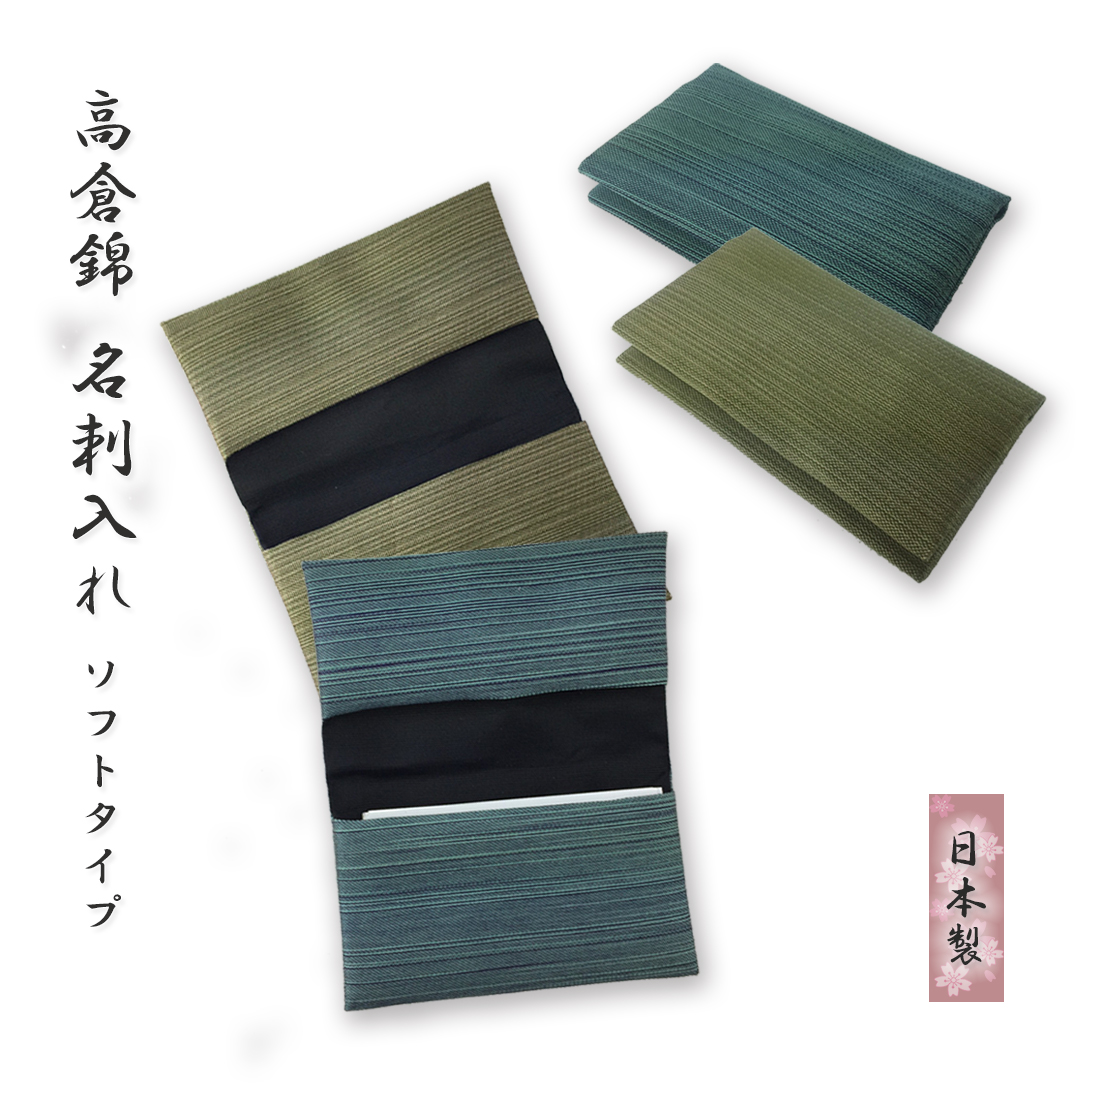 日本伝統工芸の織物で作られたソフトタイプの名刺入れ。